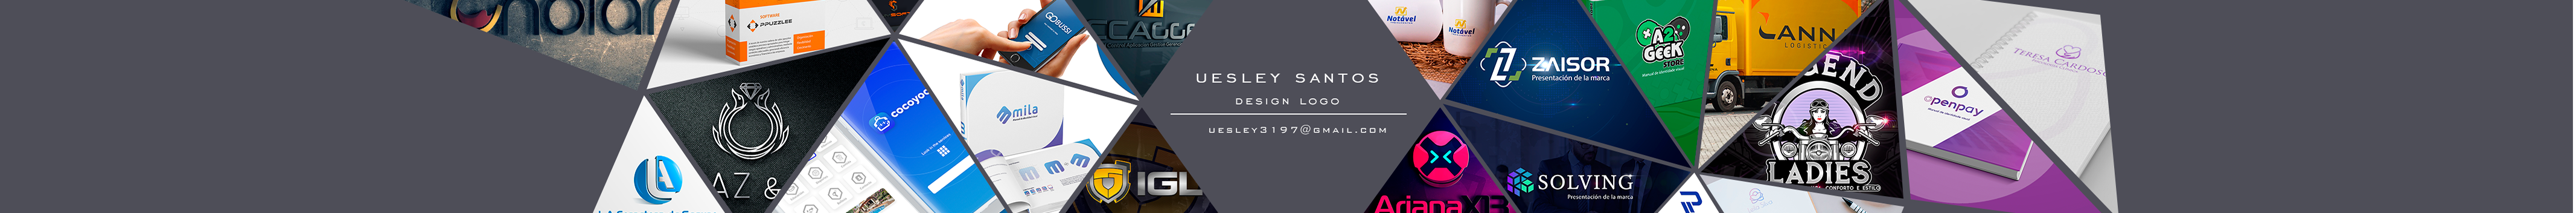 Profilbanneret til Uesley Melo dos Santos